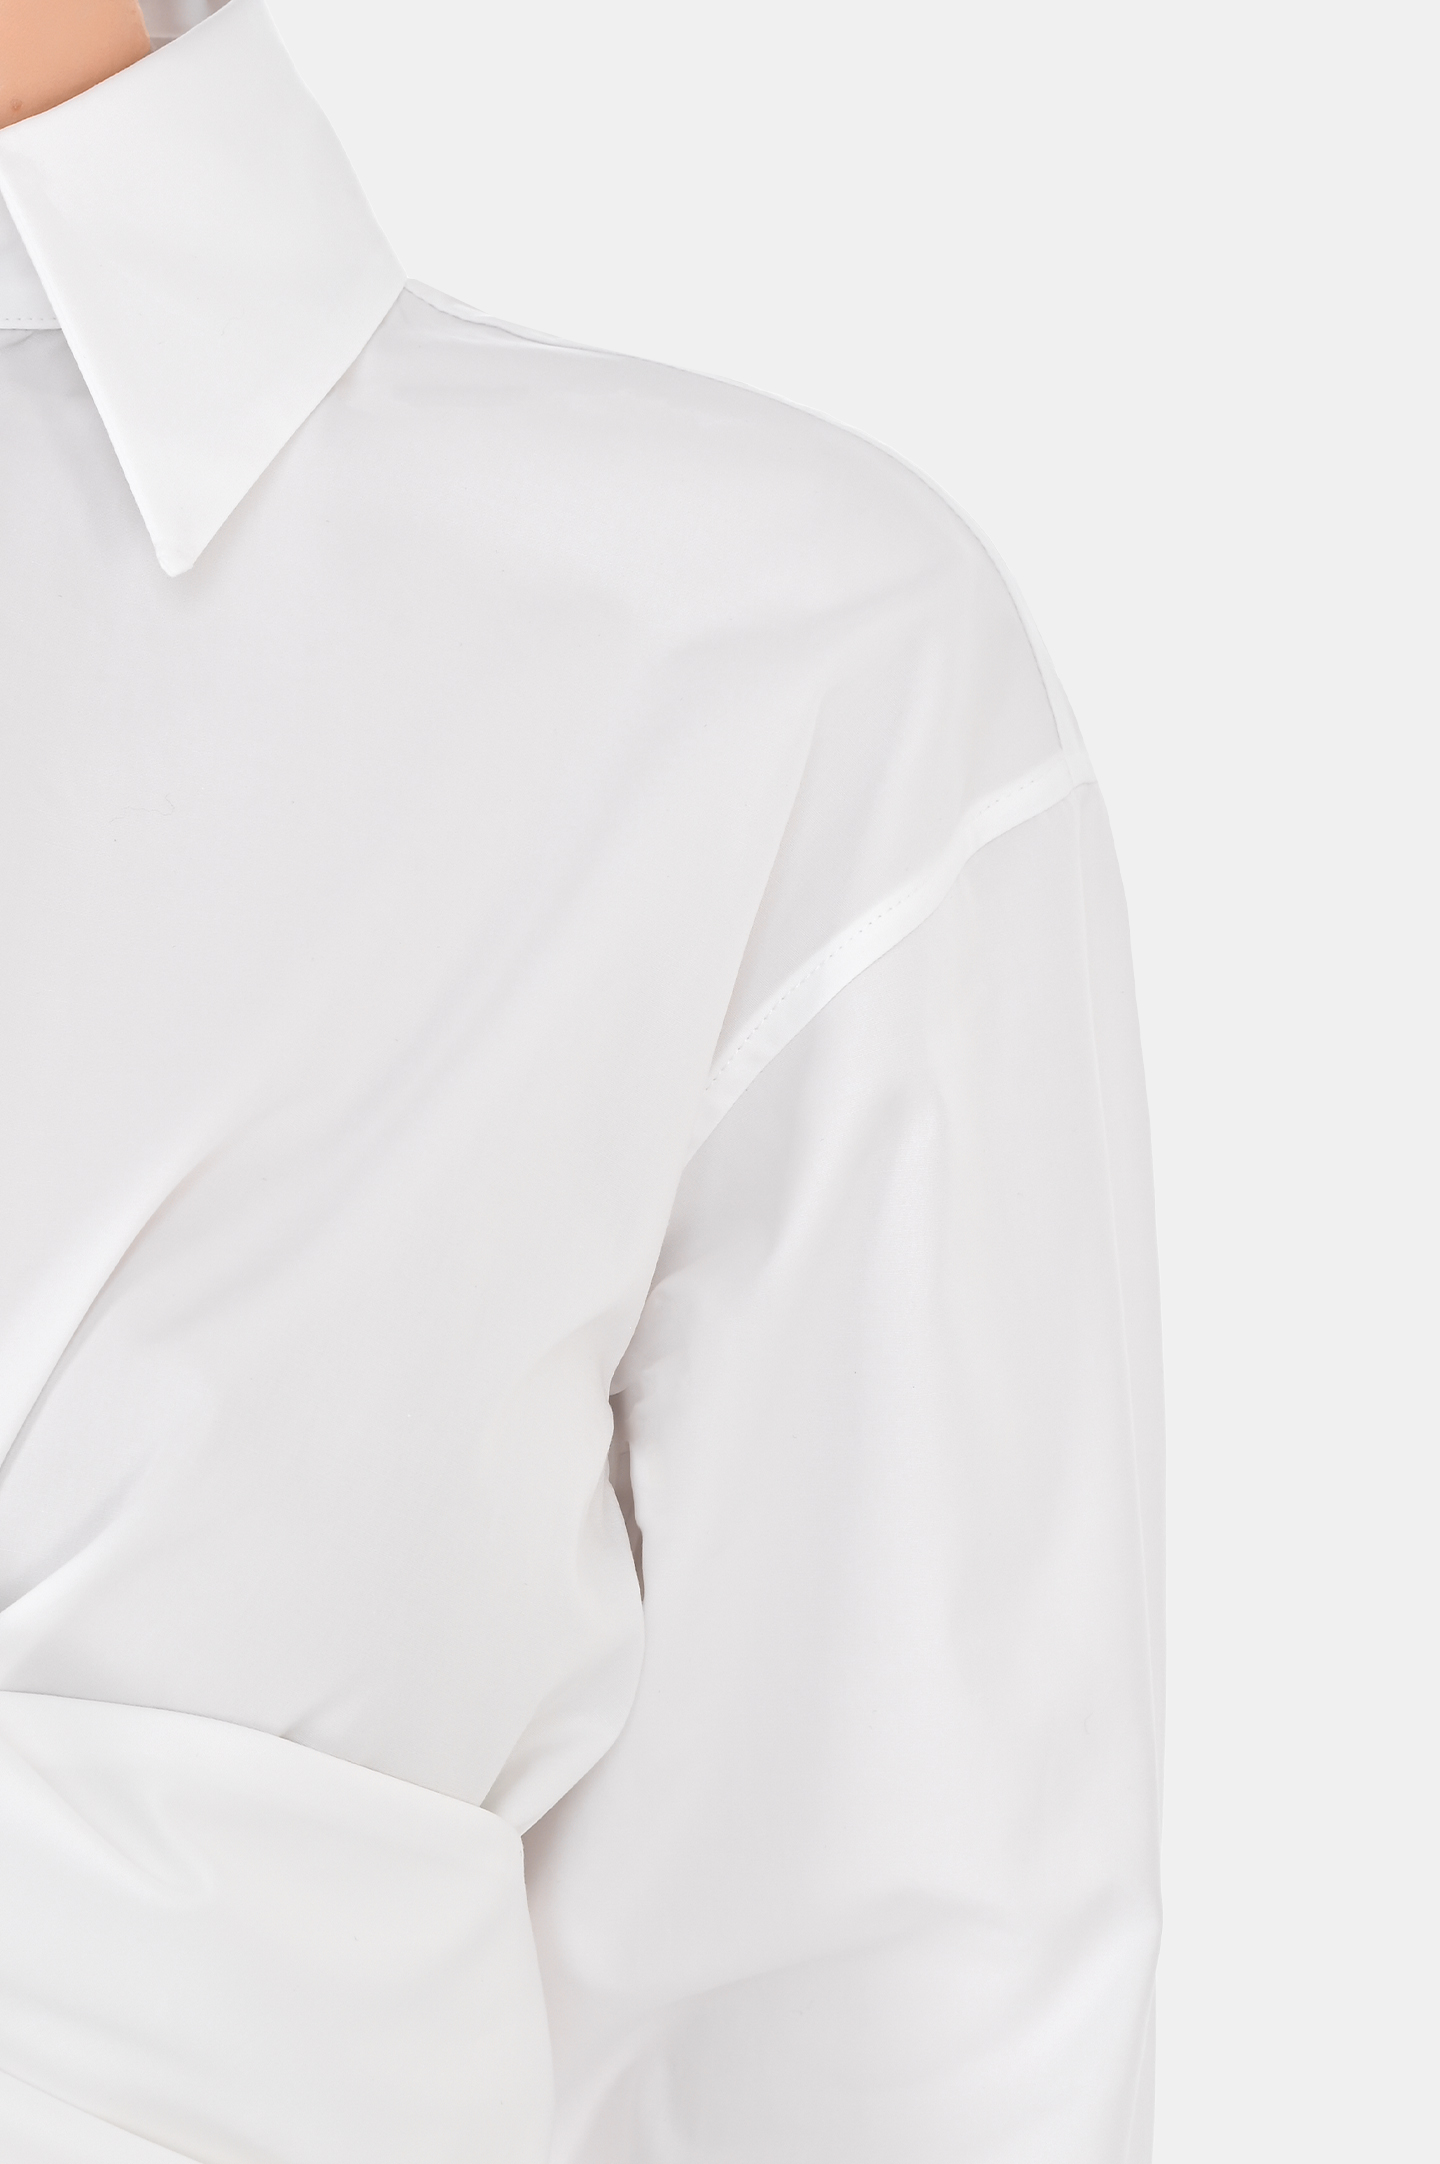 Платье из хлопка с белым воротником FABIANA FILIPPI ABD264F129 D614, цвет: Белый, Женский